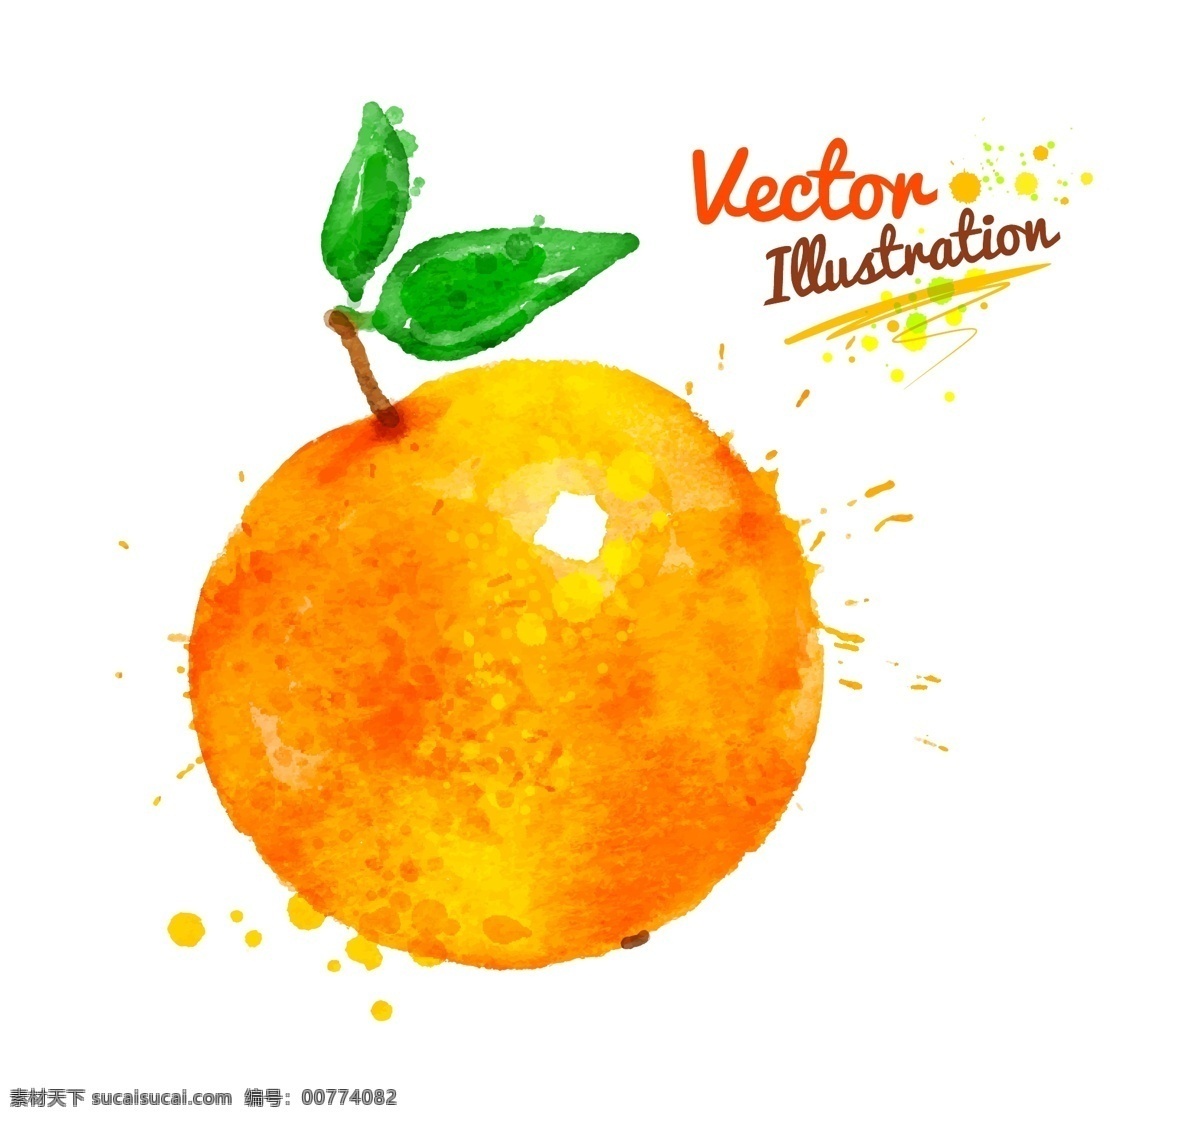 橙子 创意 喷溅 水彩 墨迹 水果 矢量 橙色 蔬菜 插画 水墨 手绘 墨点